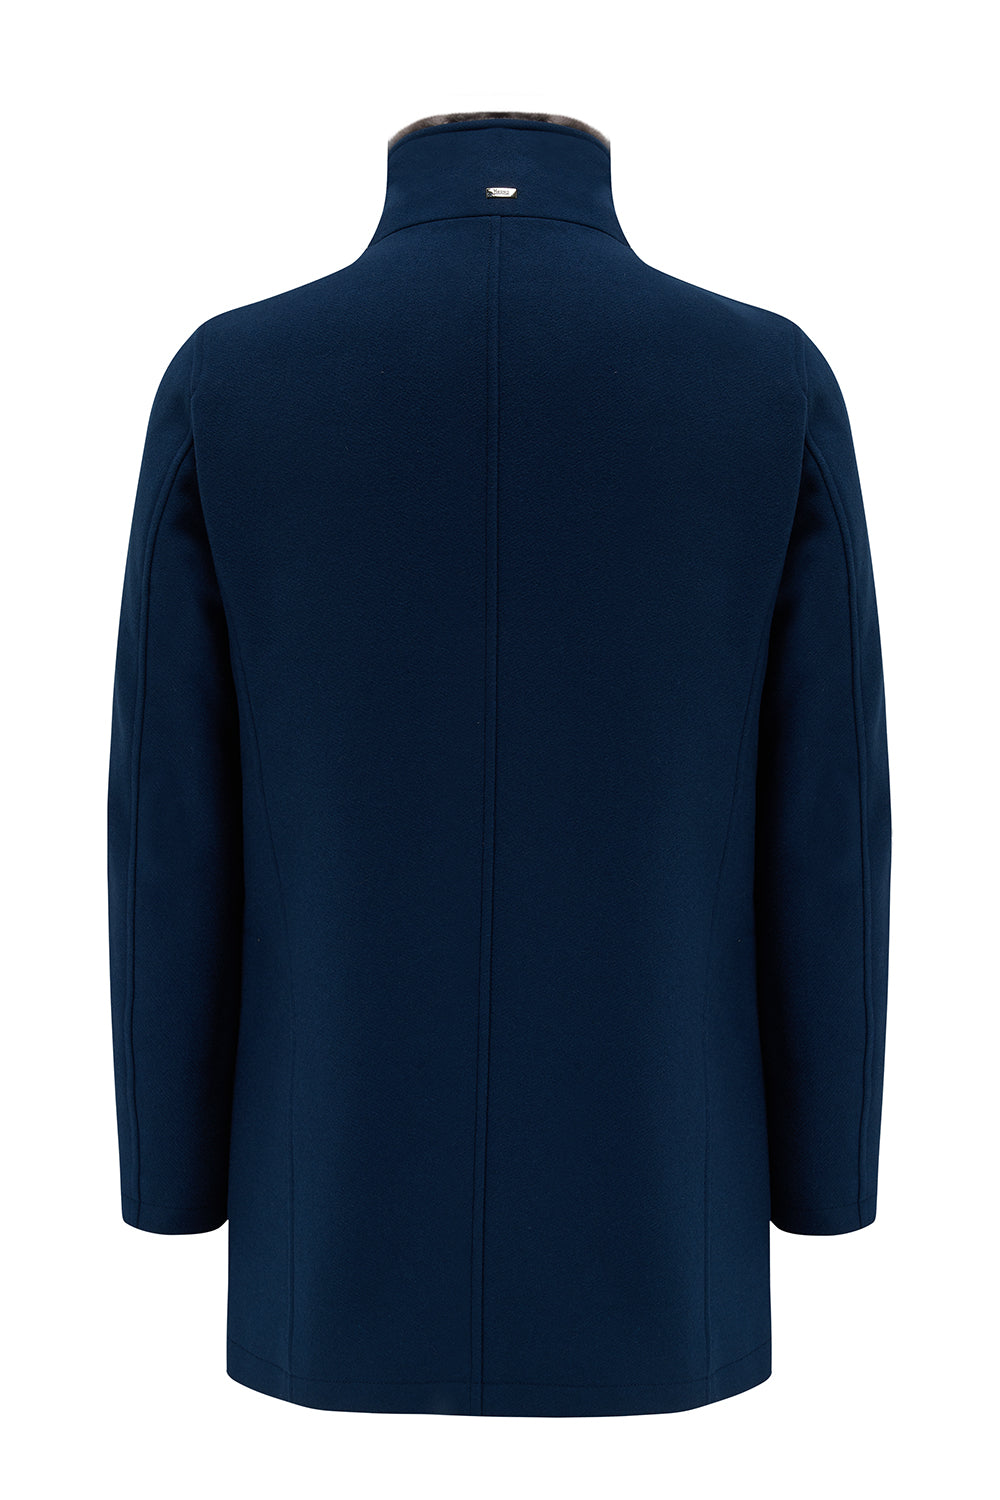 Herno Men's Mink Collar Jacket Blue - Back View